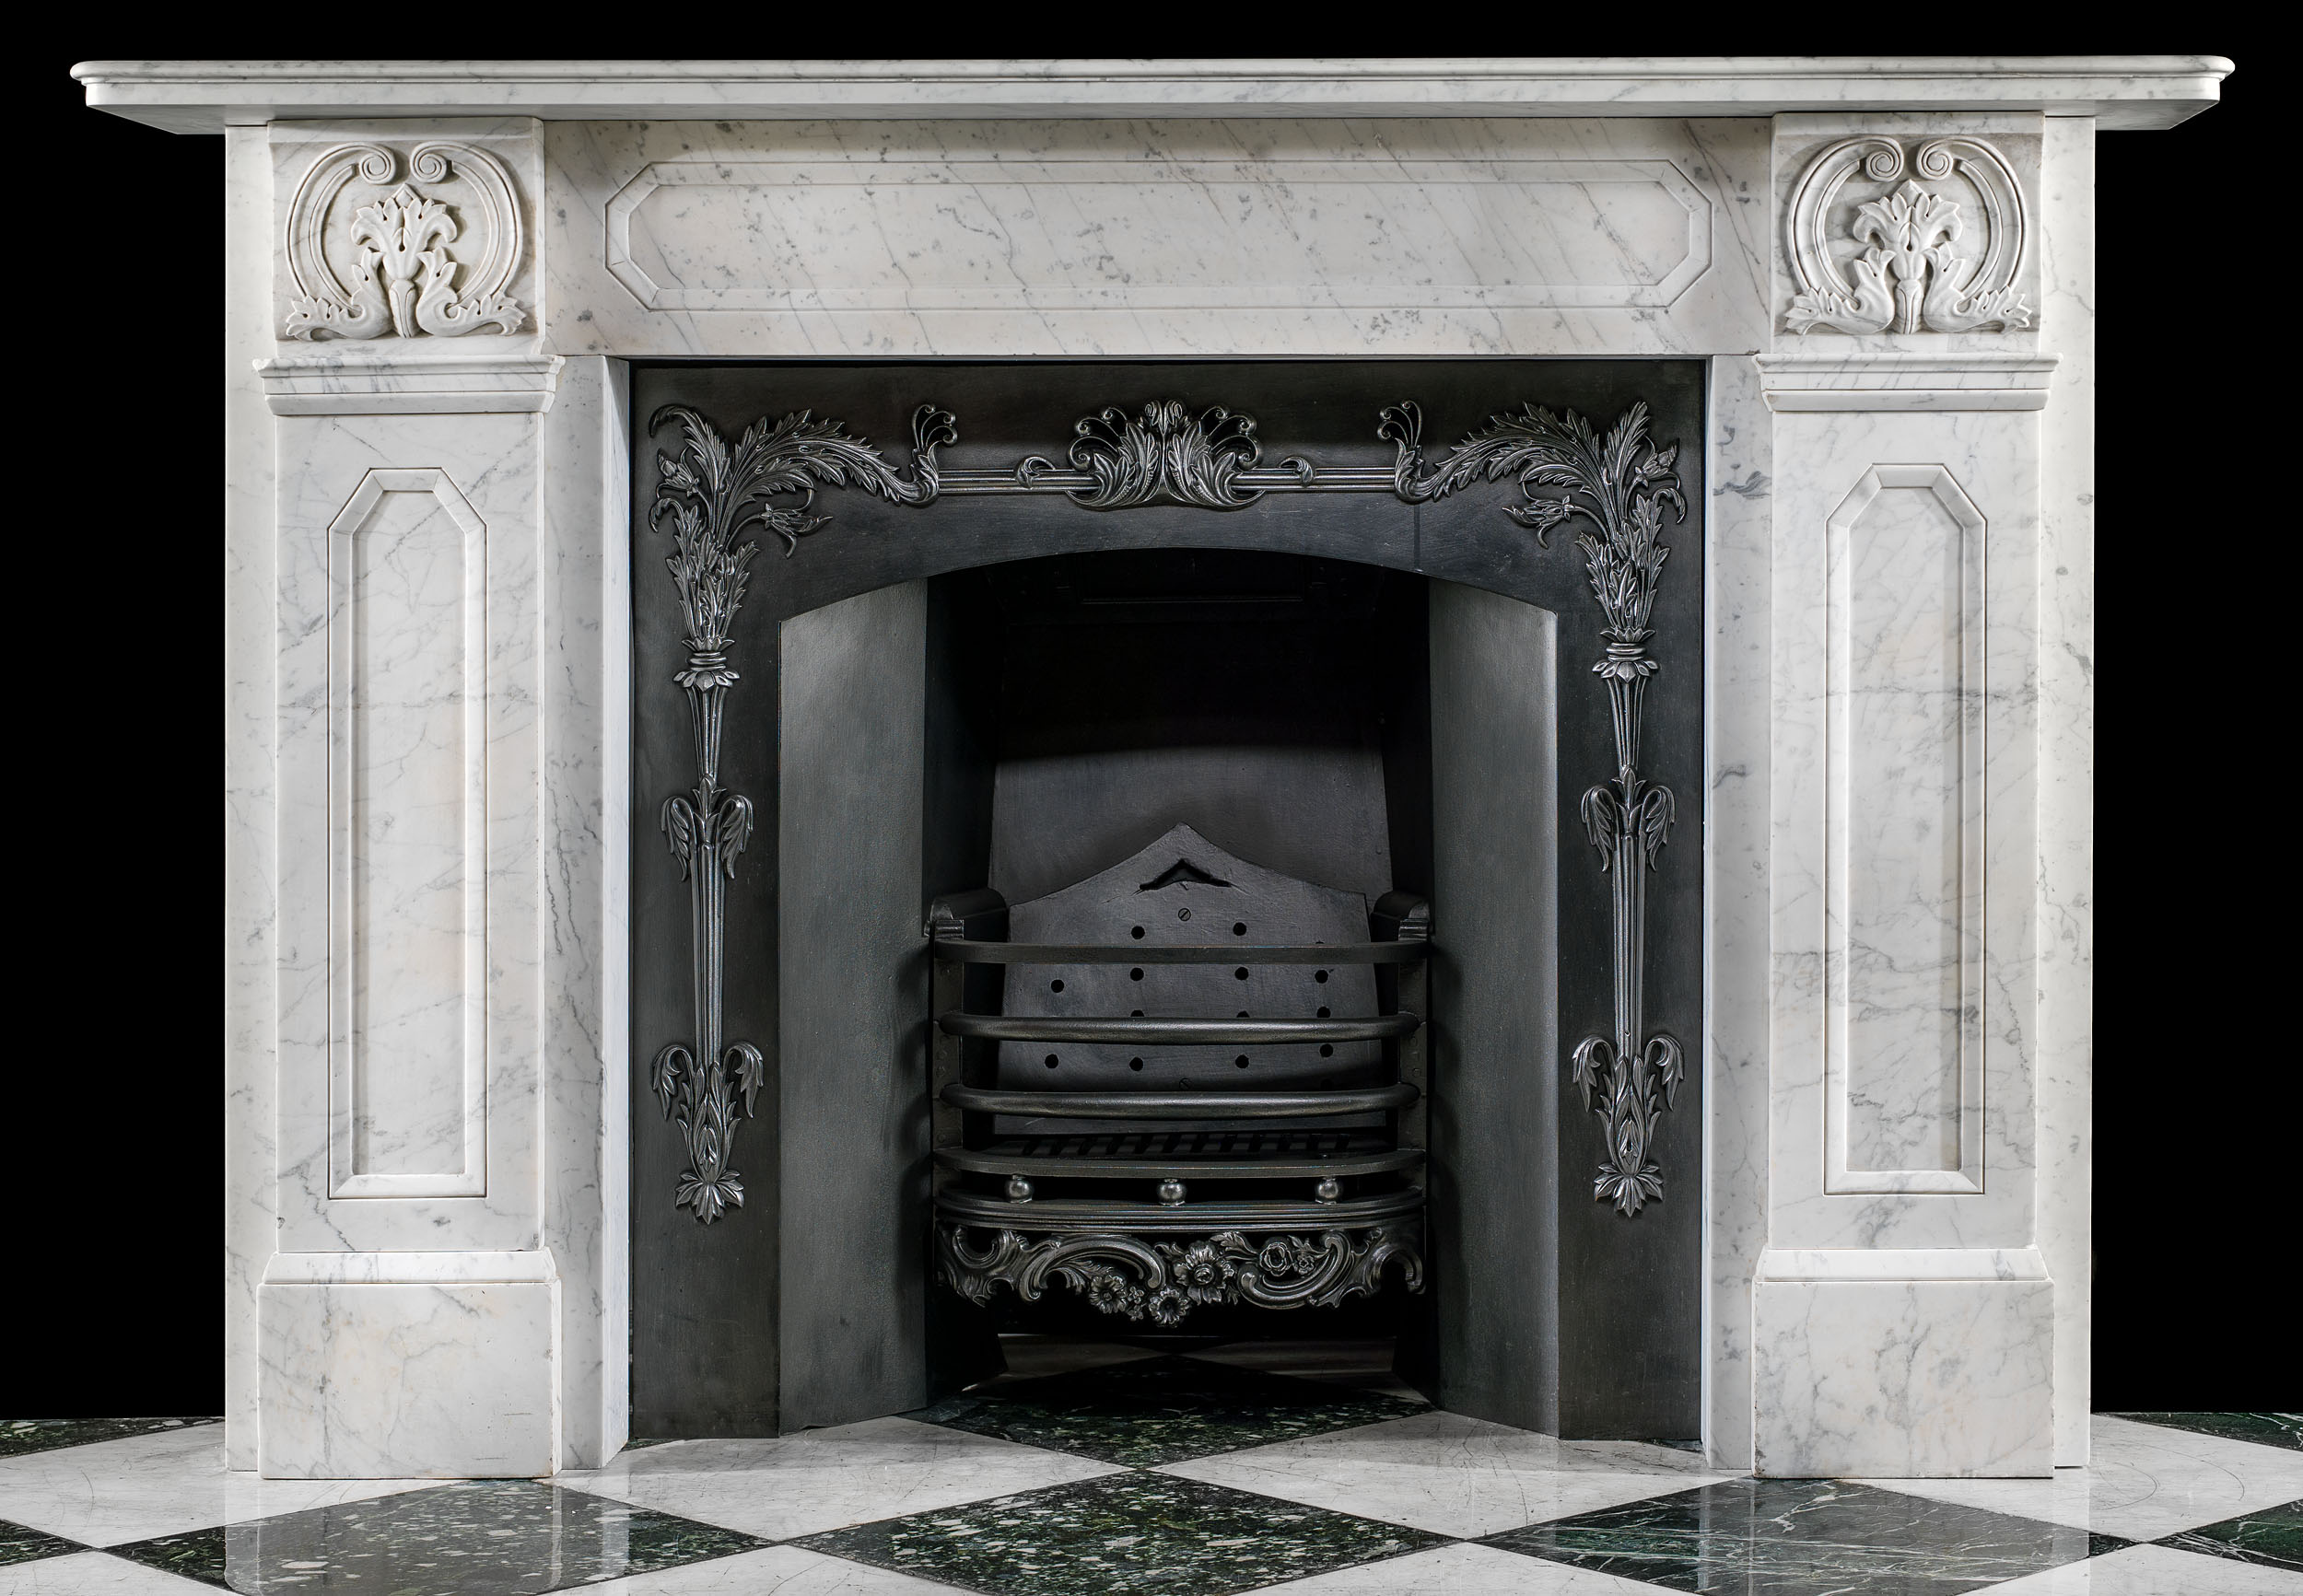 A Regency Fireplace in Veined Carrara Marble